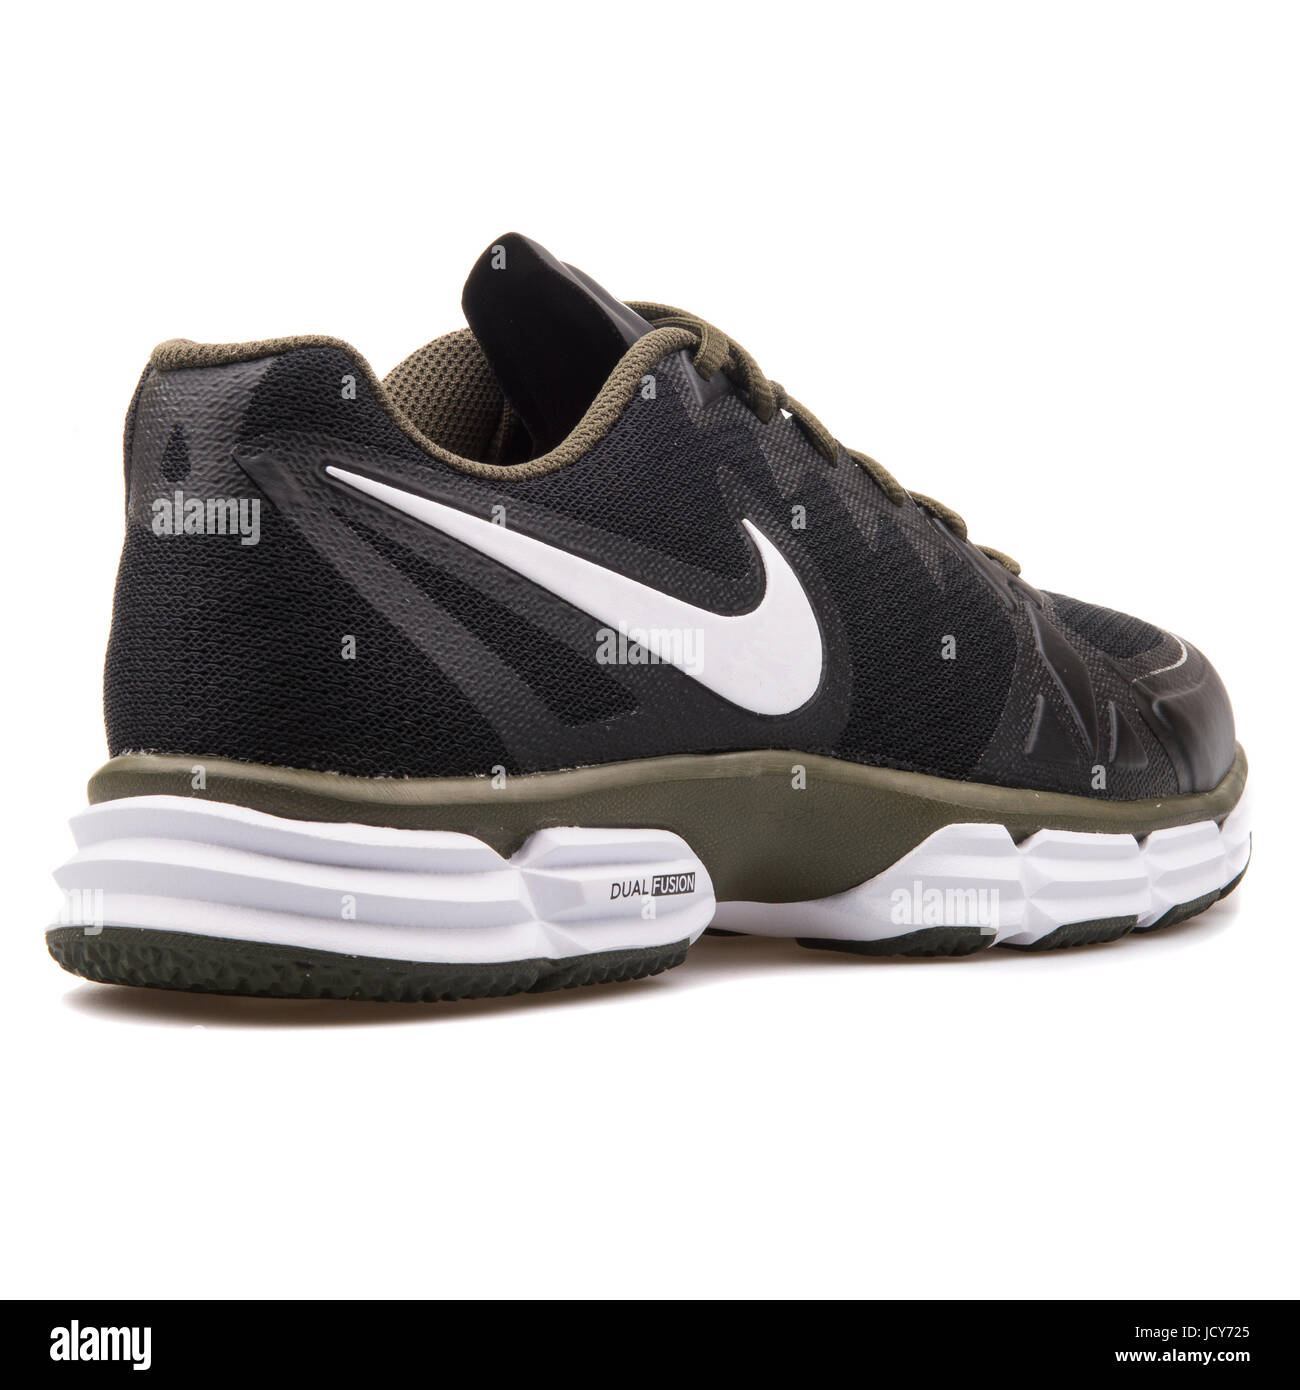 Nike Dual Fusion TR 6 Negro y caqui hombres calzados running - 704889-013  Fotografía de stock - Alamy